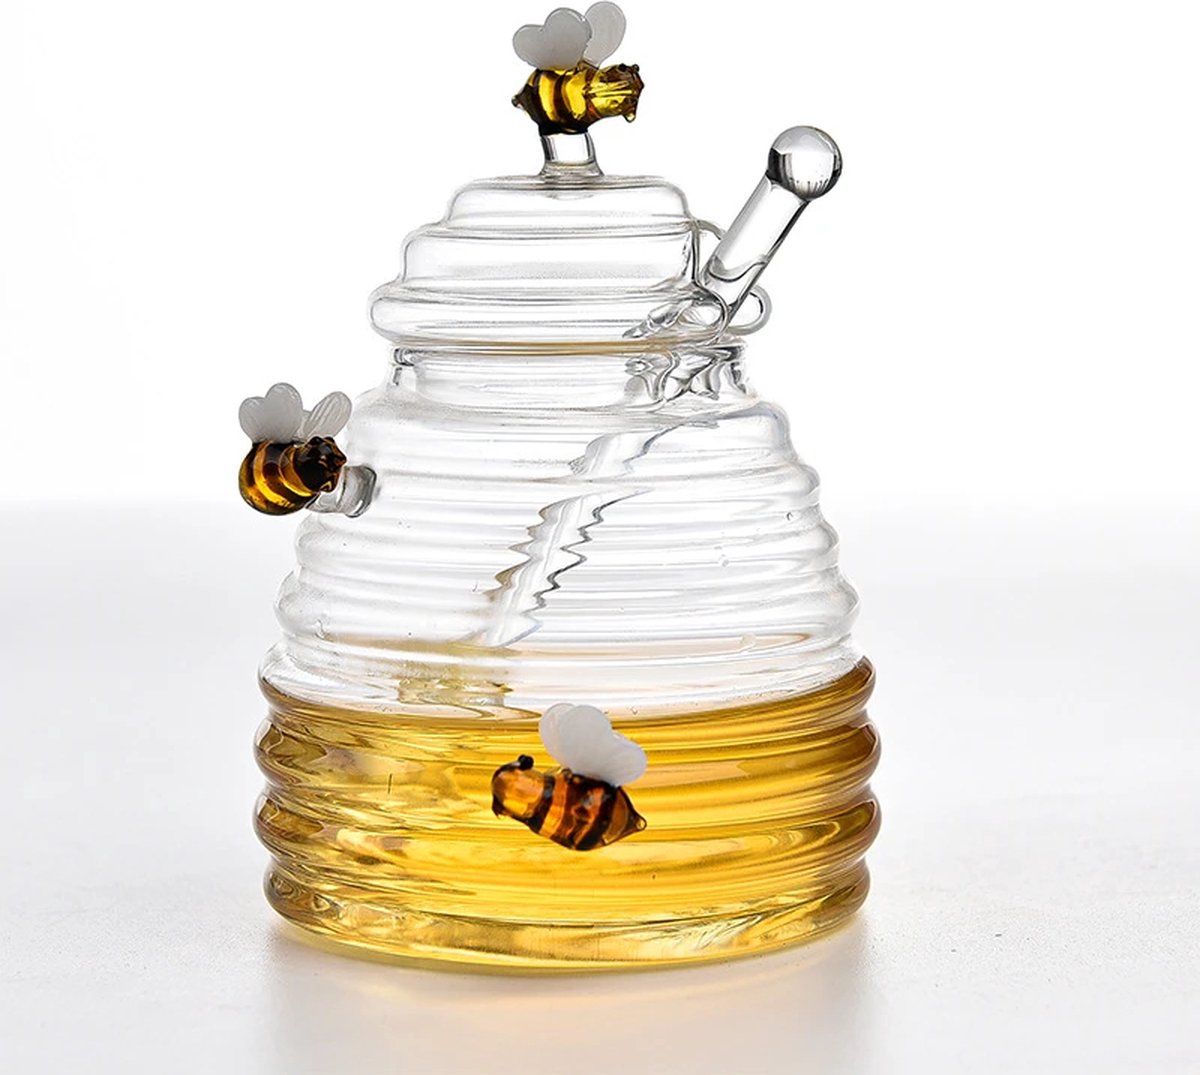 Glazen Honing Pot - Met Honing Lepel En Deksel - Glaswerk - Transparant - Opslag - Keukenbenodigdheden - Decoratief - High Tea - Bij De Thee - Ontbijt - Lunch